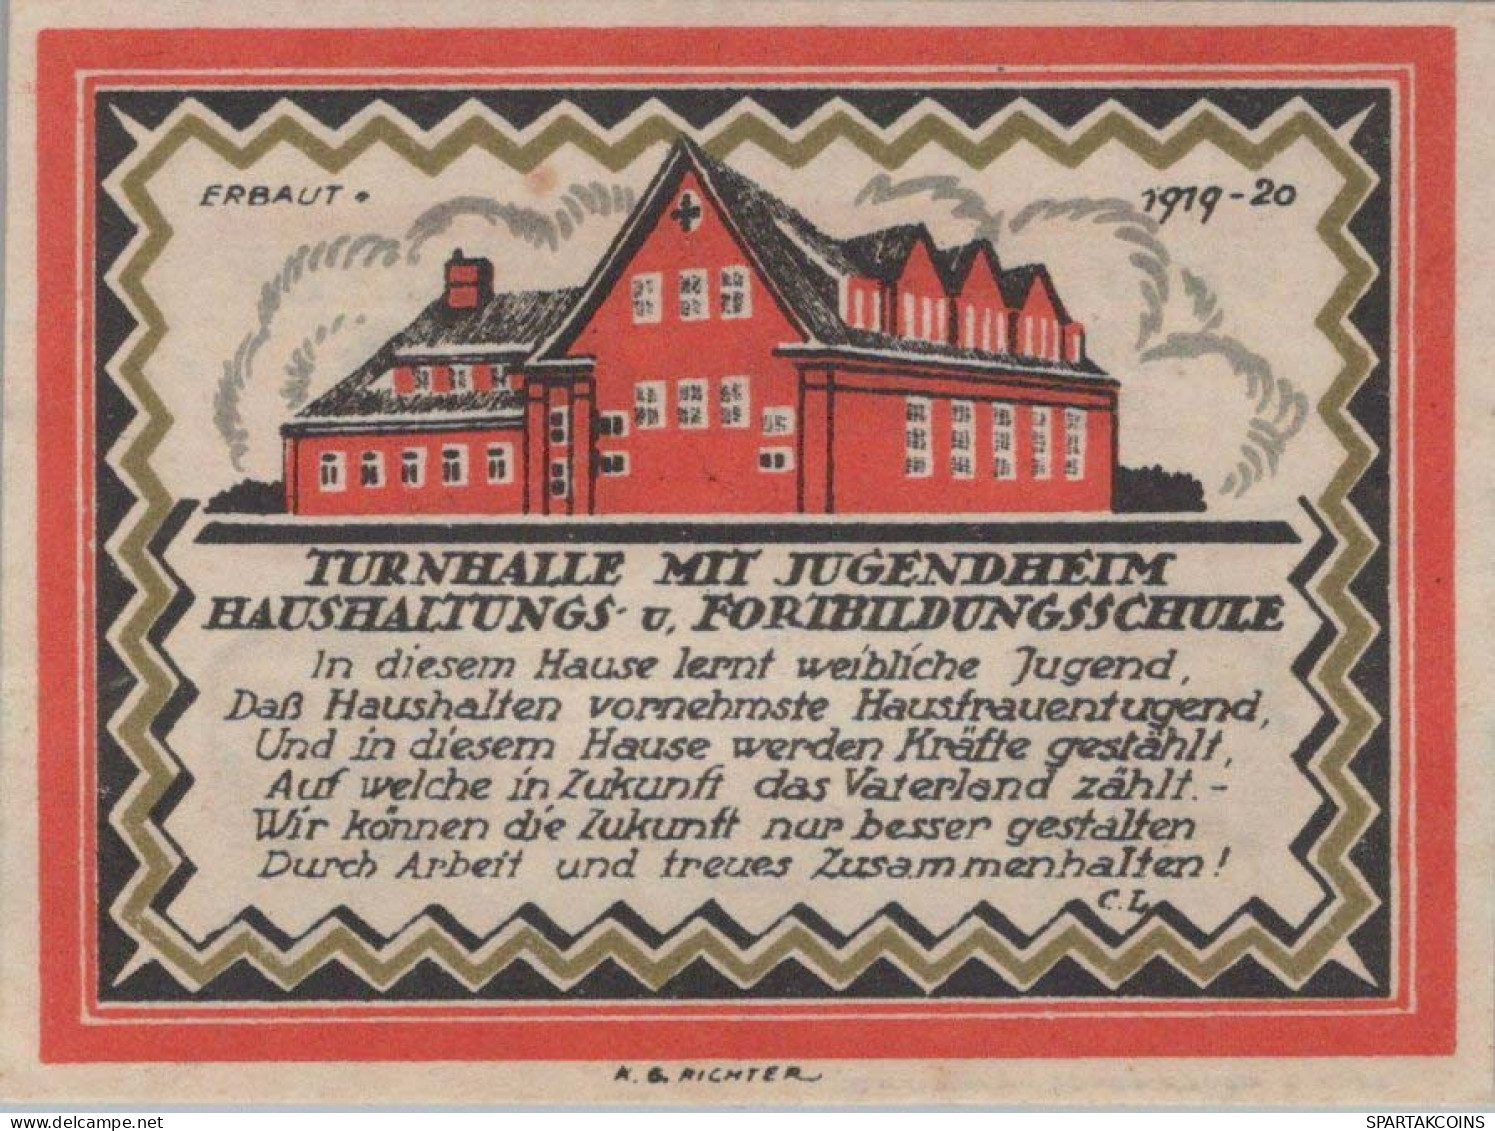 75 PFENNIG 1921 Stadt BÜDELSDORF Schleswig-Holstein UNC DEUTSCHLAND #PA317 - [11] Emissions Locales